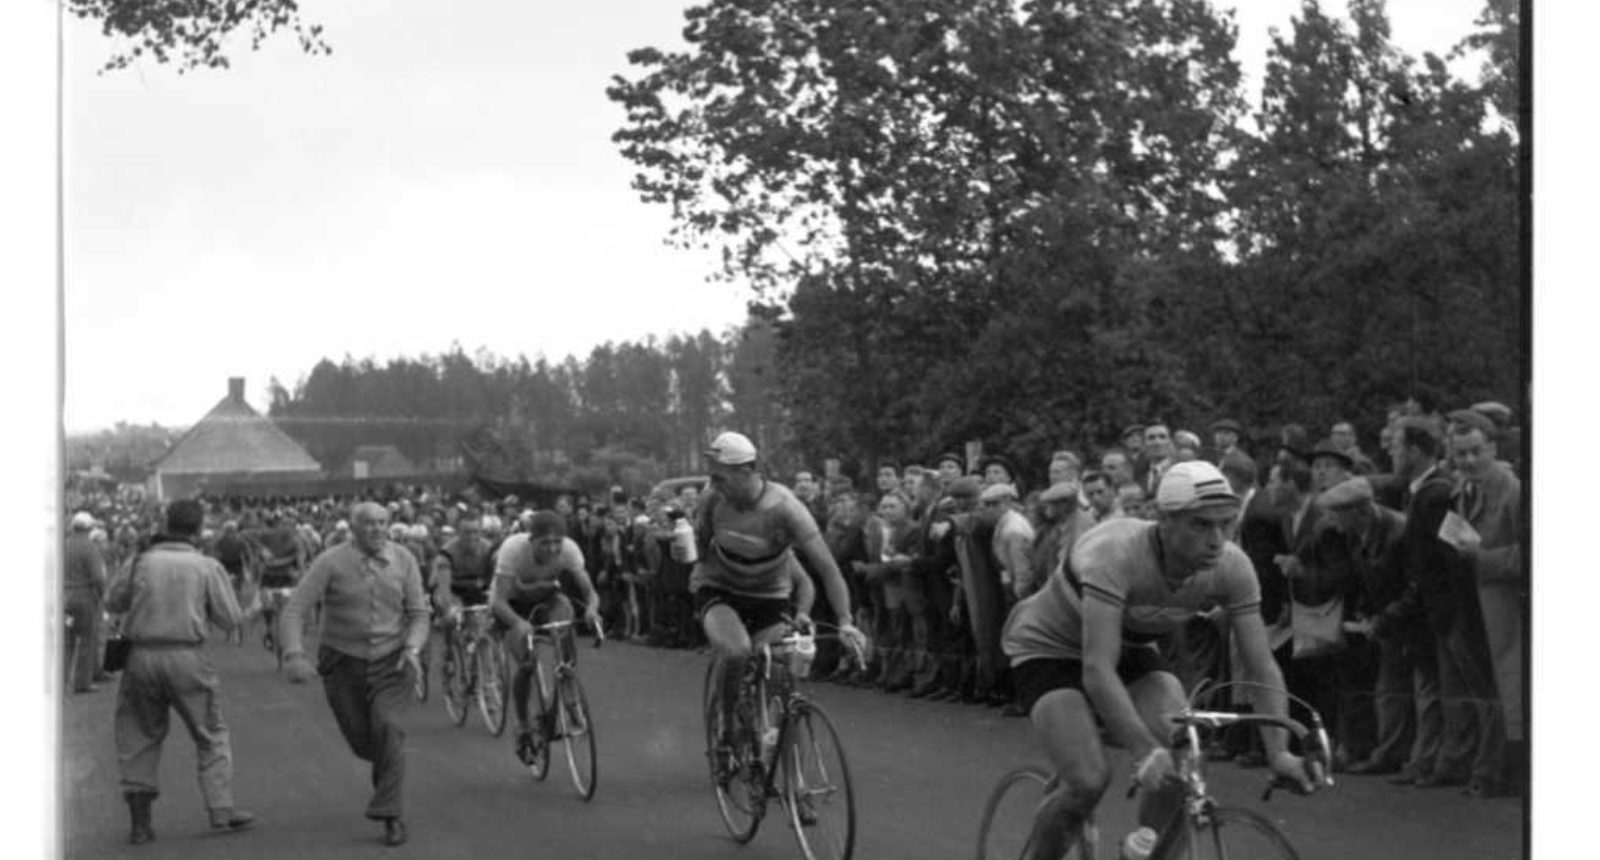 Wereldkampioenschap wielrennen Waregem 1957 - (c) KOERS Museum van de Wielersport (Roeselare)